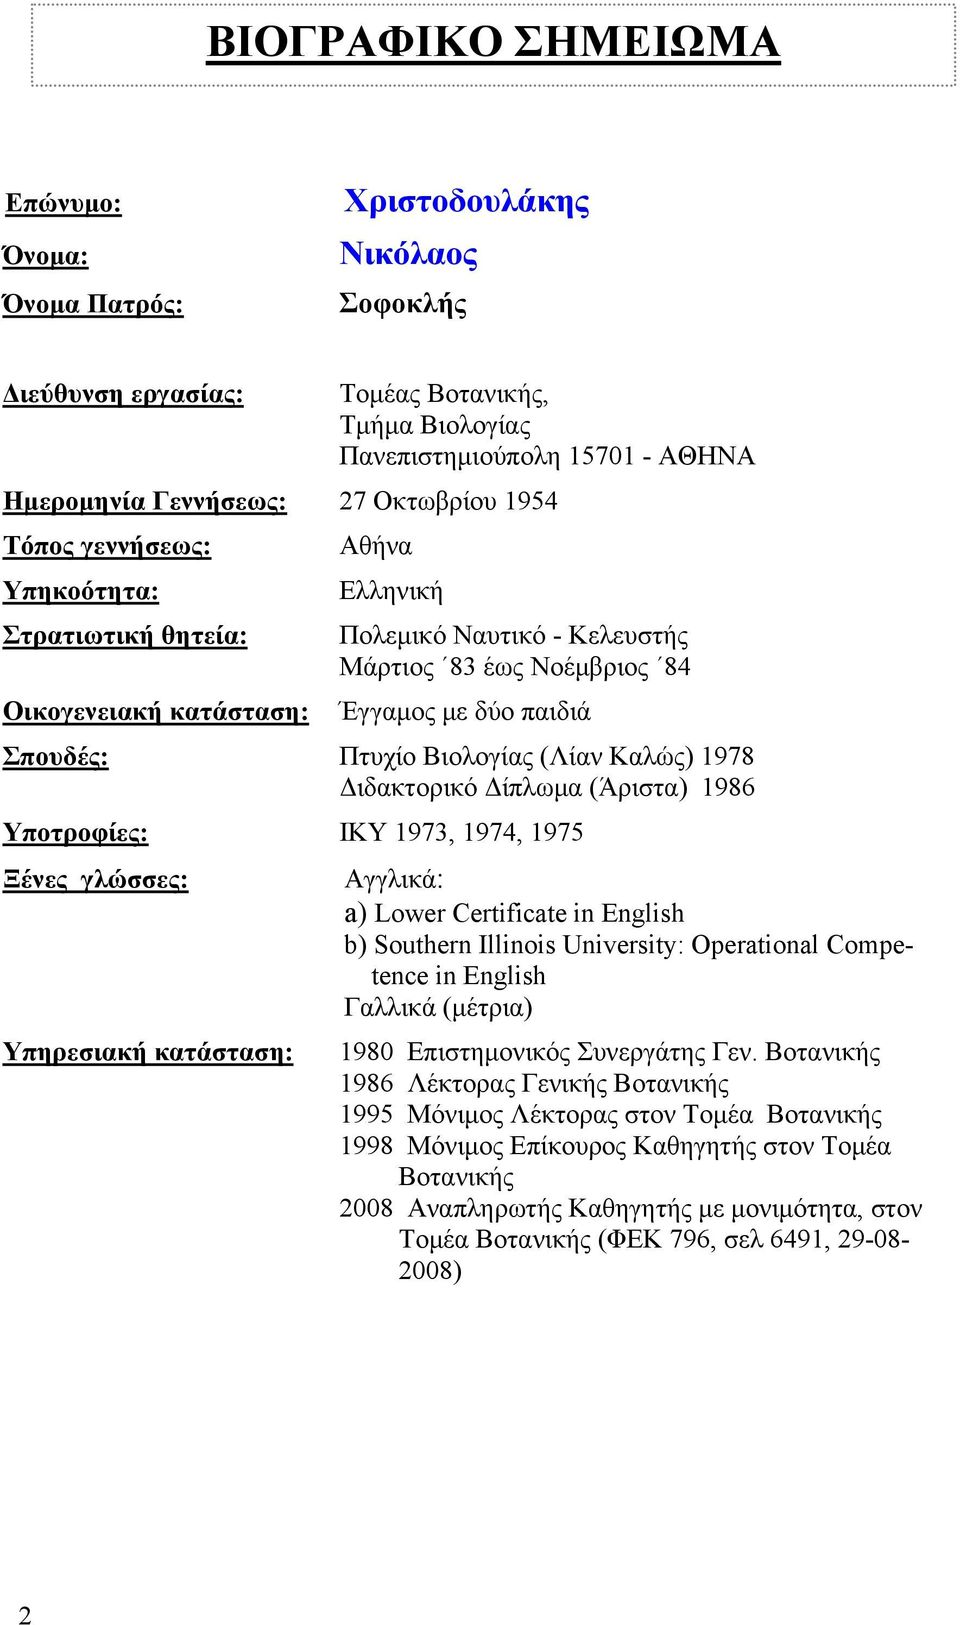 Βιολογίας (Λίαν Καλώς) 1978 Διδακτορικό Δίπλωμα (Άριστα) 1986 Υποτροφίες: ΙΚΥ 1973, 1974, 1975 Ξένες γλώσσες: Αγγλικά: a) Lower Certificate in English b) Southern Illinois University: Operational